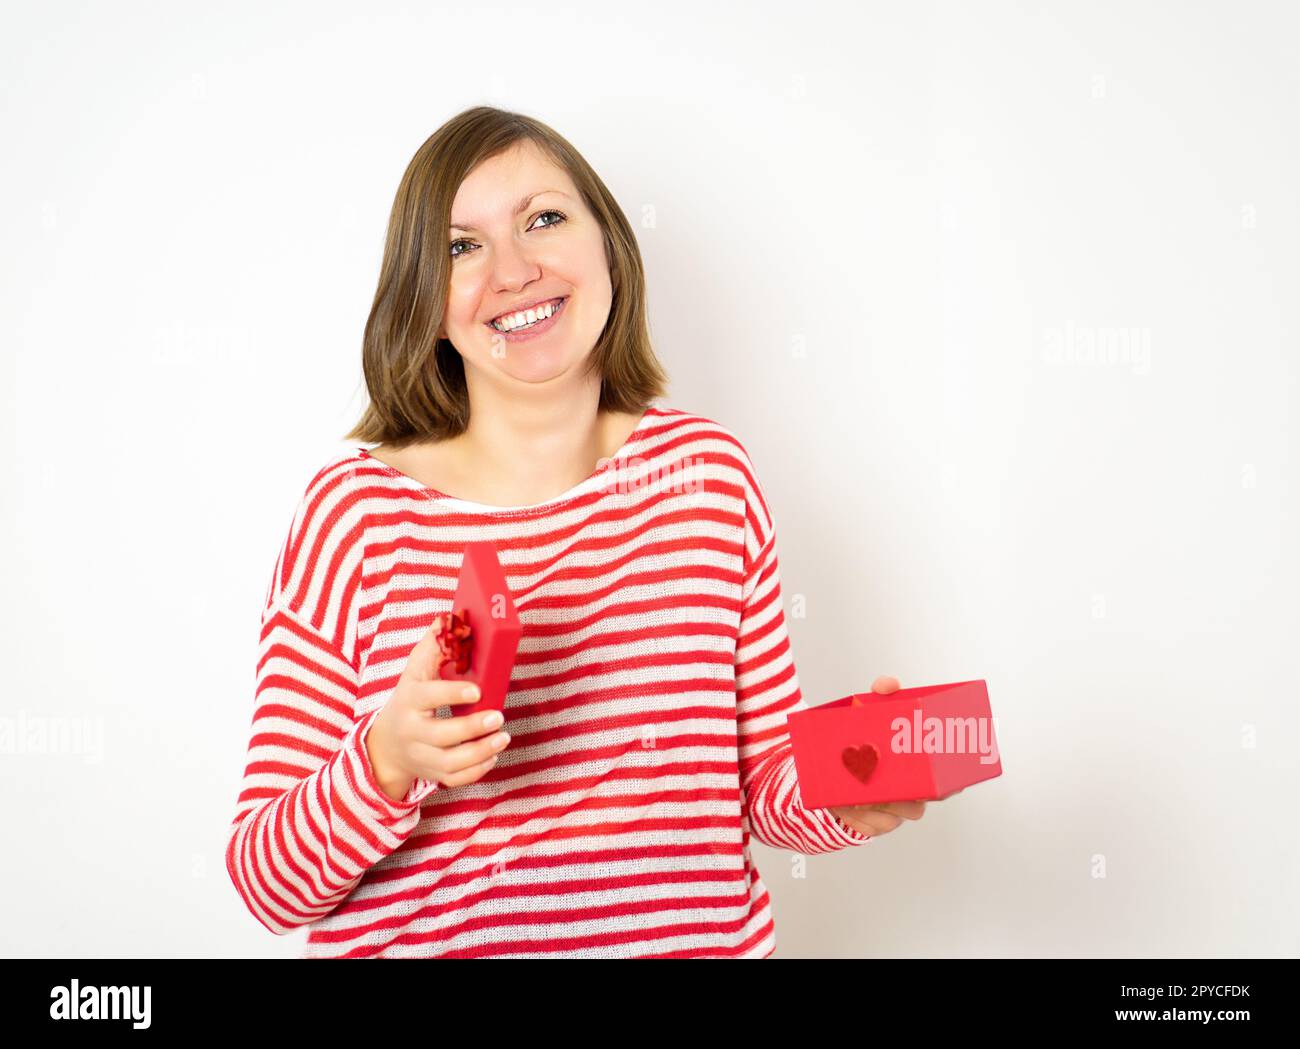 Ritratto di una bella ragazza sorridente felice in camicia rossa e bianca che apre una scatola regalo rossa su sfondo bianco. San Valentino concetto. Foto Stock